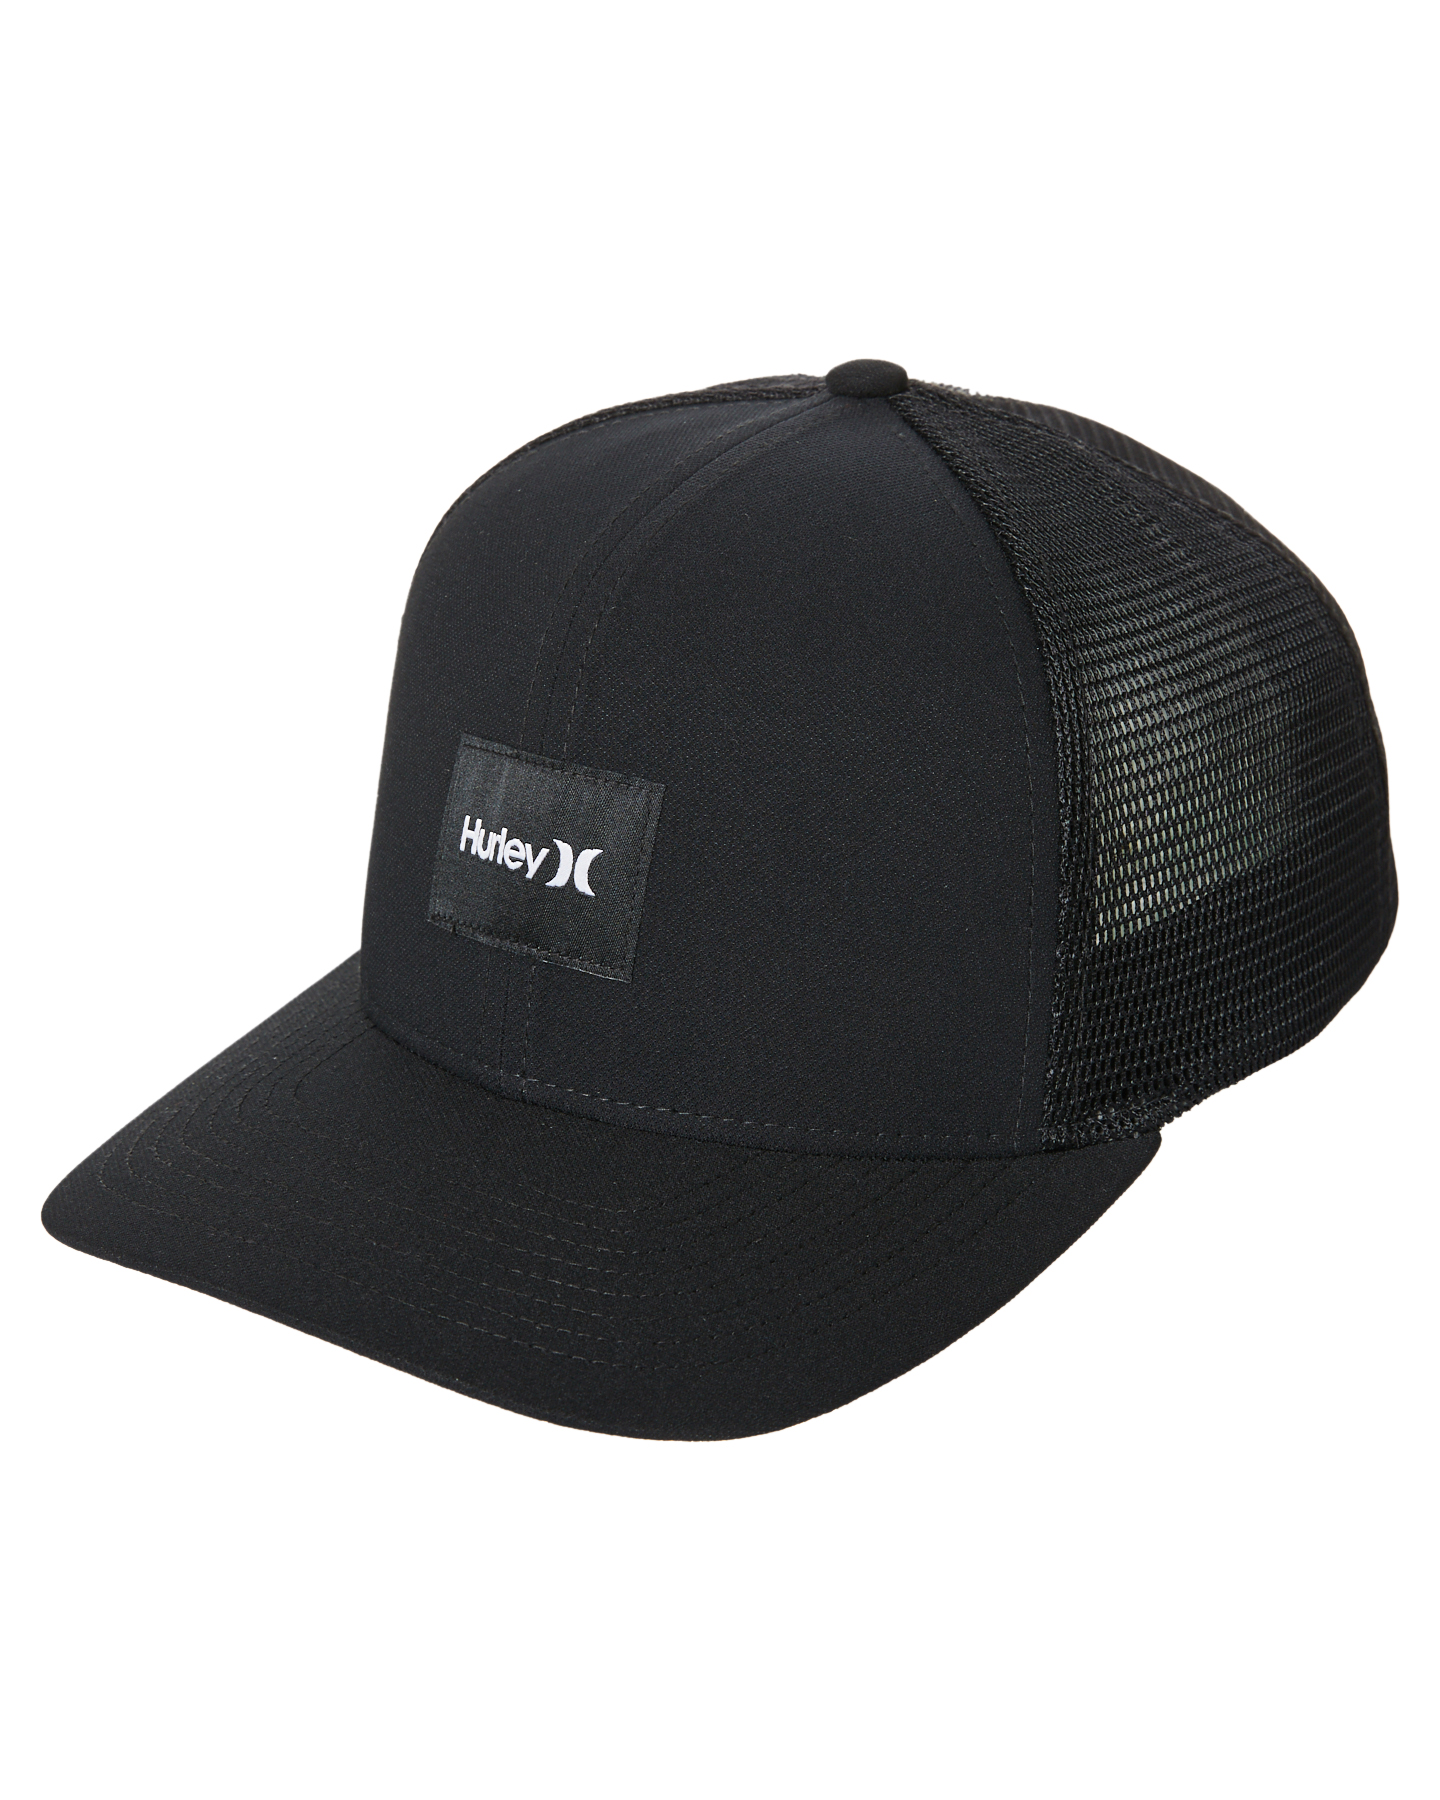 Hurley Warner Trucker Hat - Black | SurfStitch